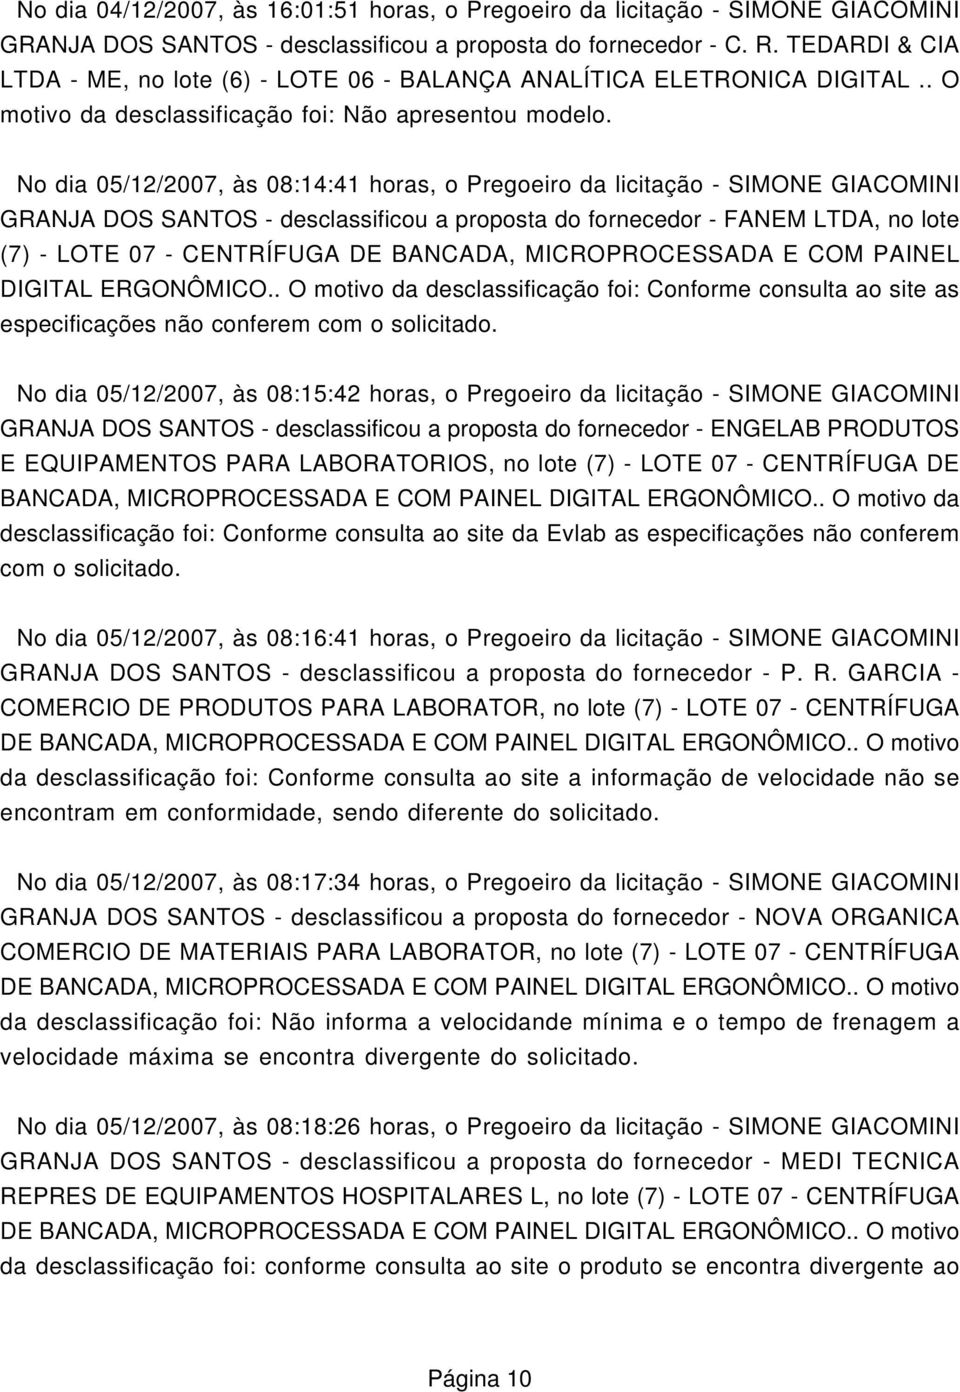 No dia 05/12/2007, às 08:14:41 horas, o Pregoeiro da licitação - SIMONE GIACOMINI GRANJA DOS SANTOS - desclassificou a proposta do fornecedor - FANEM LTDA, no lote (7) - LOTE 07 - CENTRÍFUGA DE